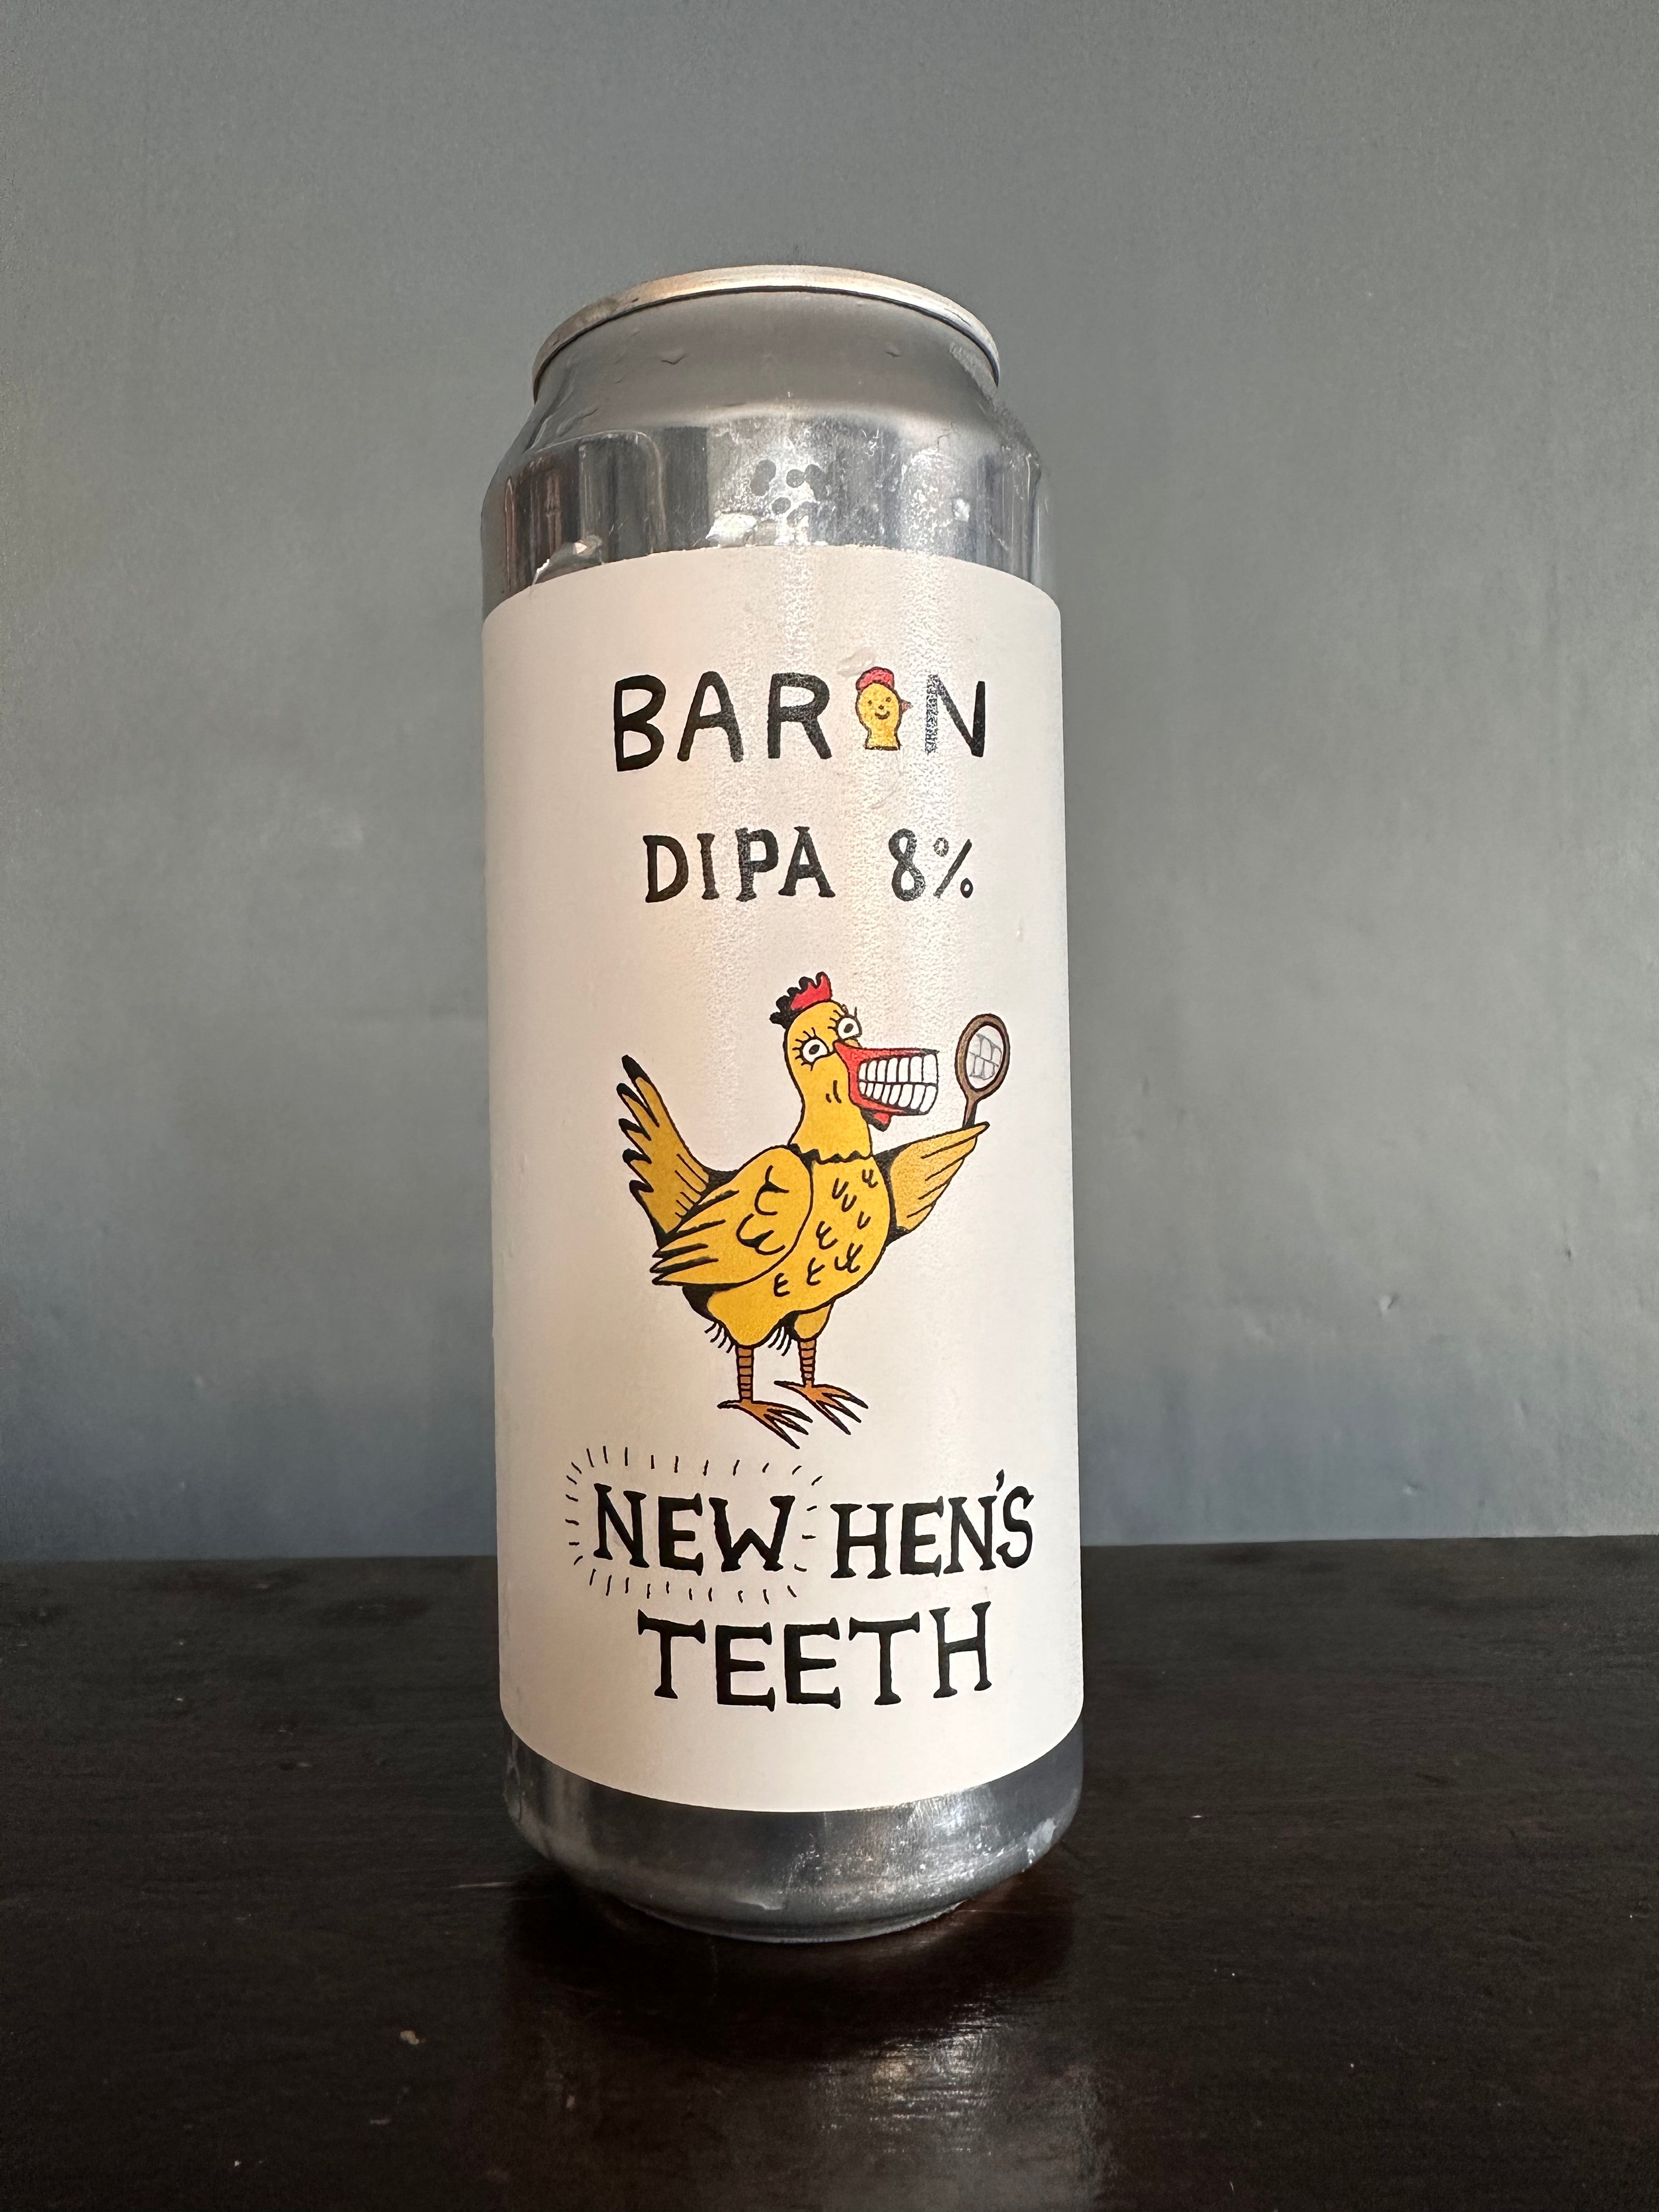 Baron New Hen’s Teeth DIPA 8%